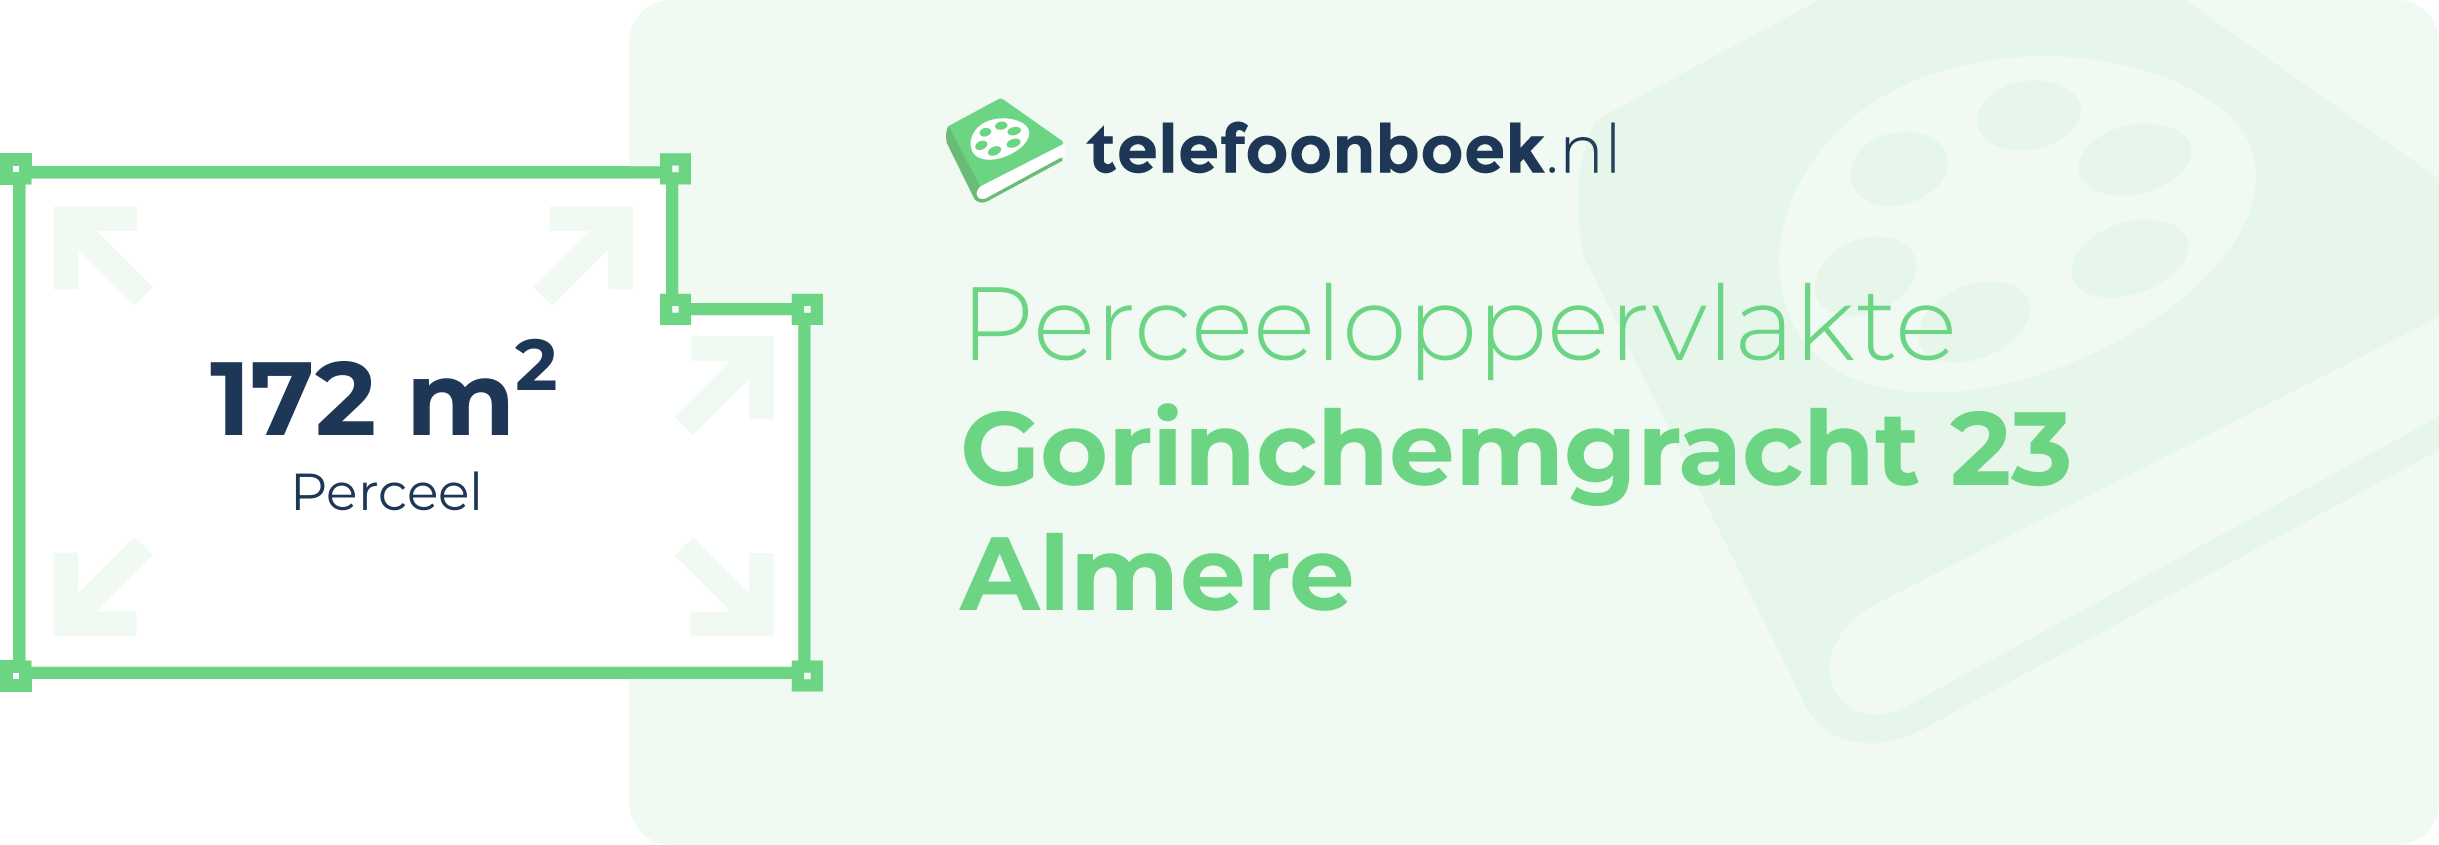 Perceeloppervlakte Gorinchemgracht 23 Almere